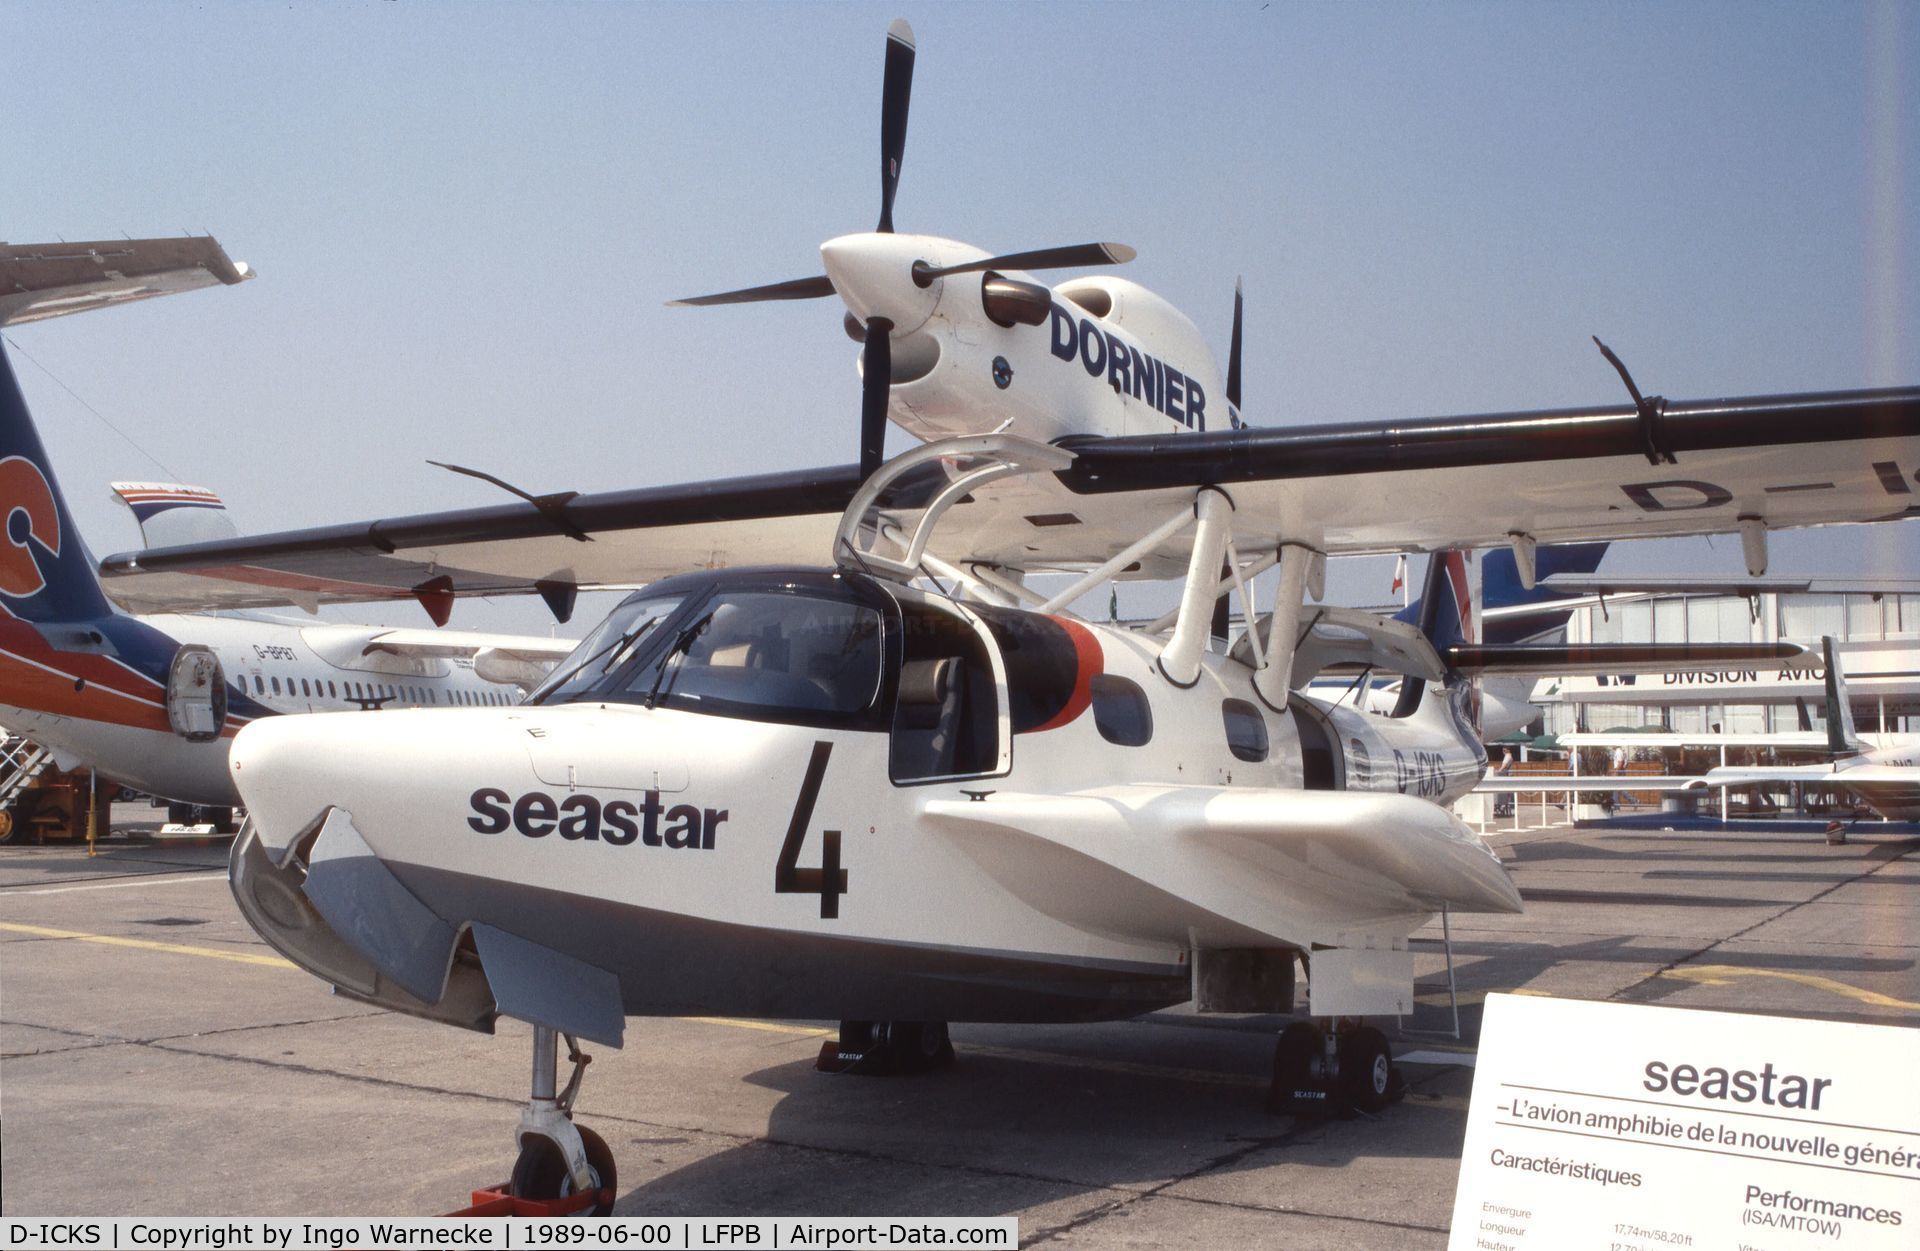 D-ICKS, 1985 Dornier CD-2 Seastar C/N 1002, Dornier CD-2 Seastar at the Aerosalon 1989, Paris